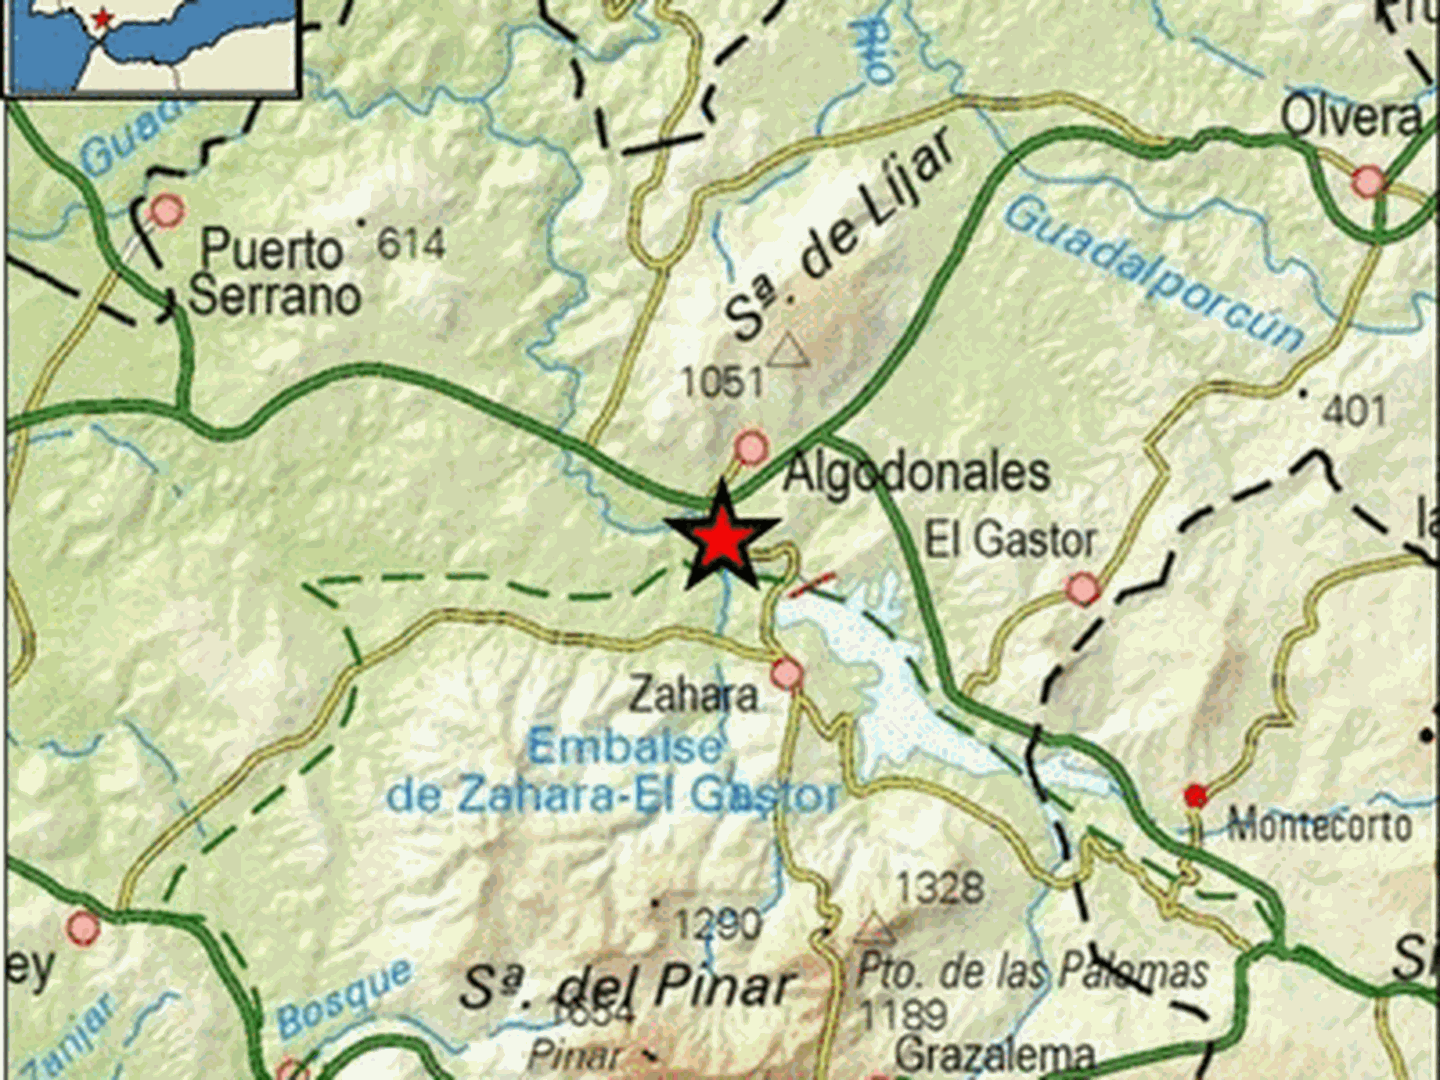 Epicentro del terremoto en las proximidades de Algodonales. (IGN)